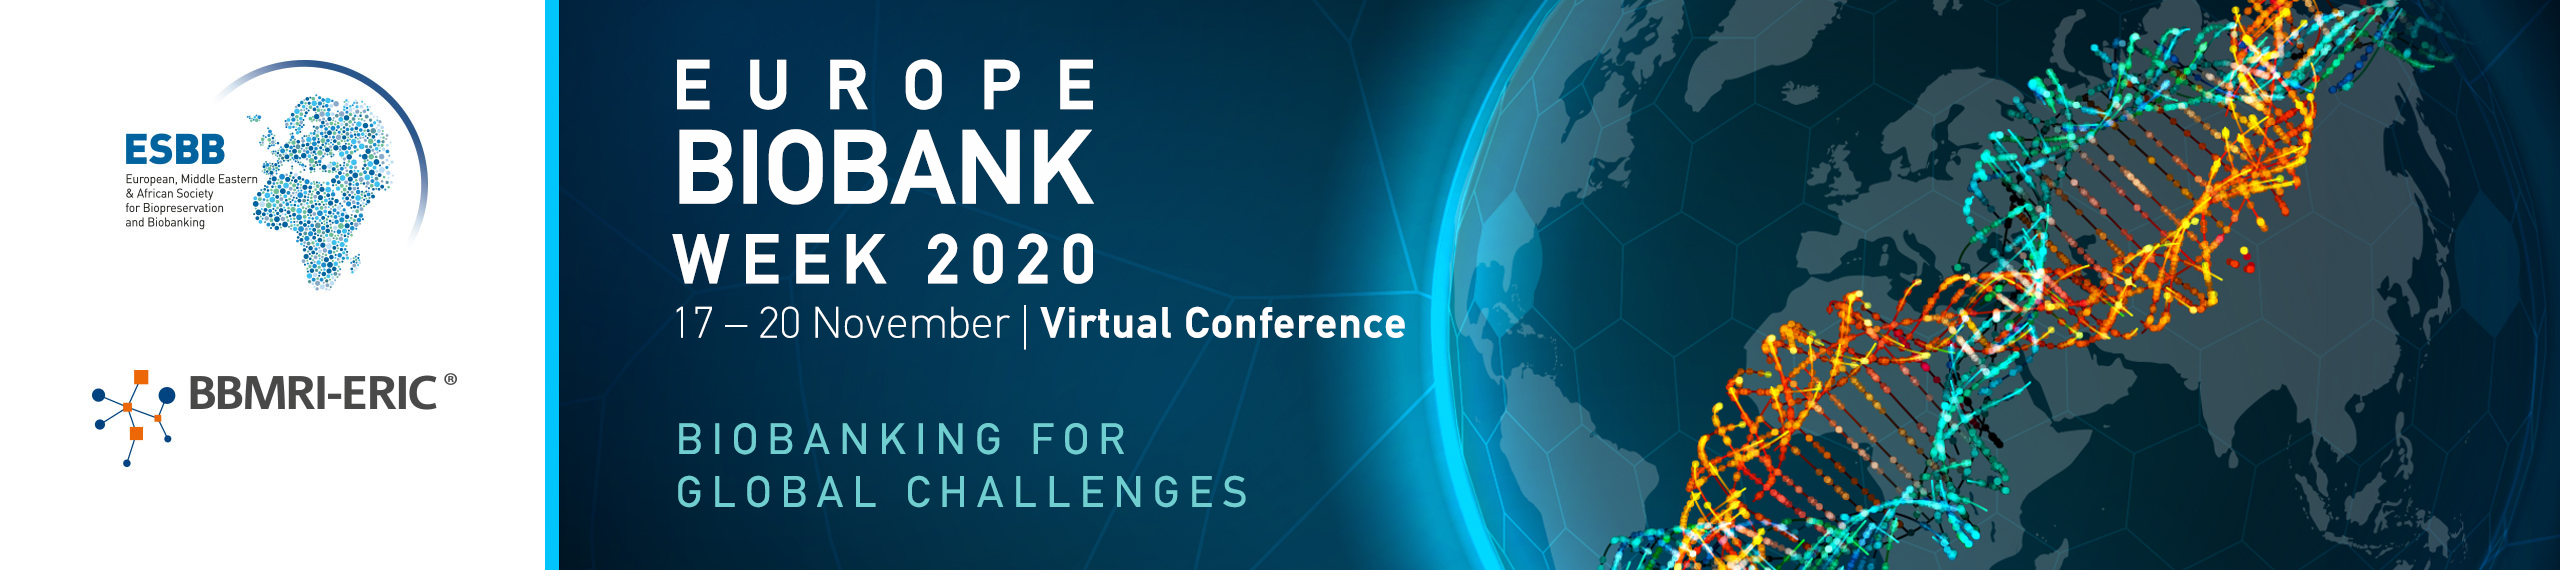 Europe Biobank Week 2020